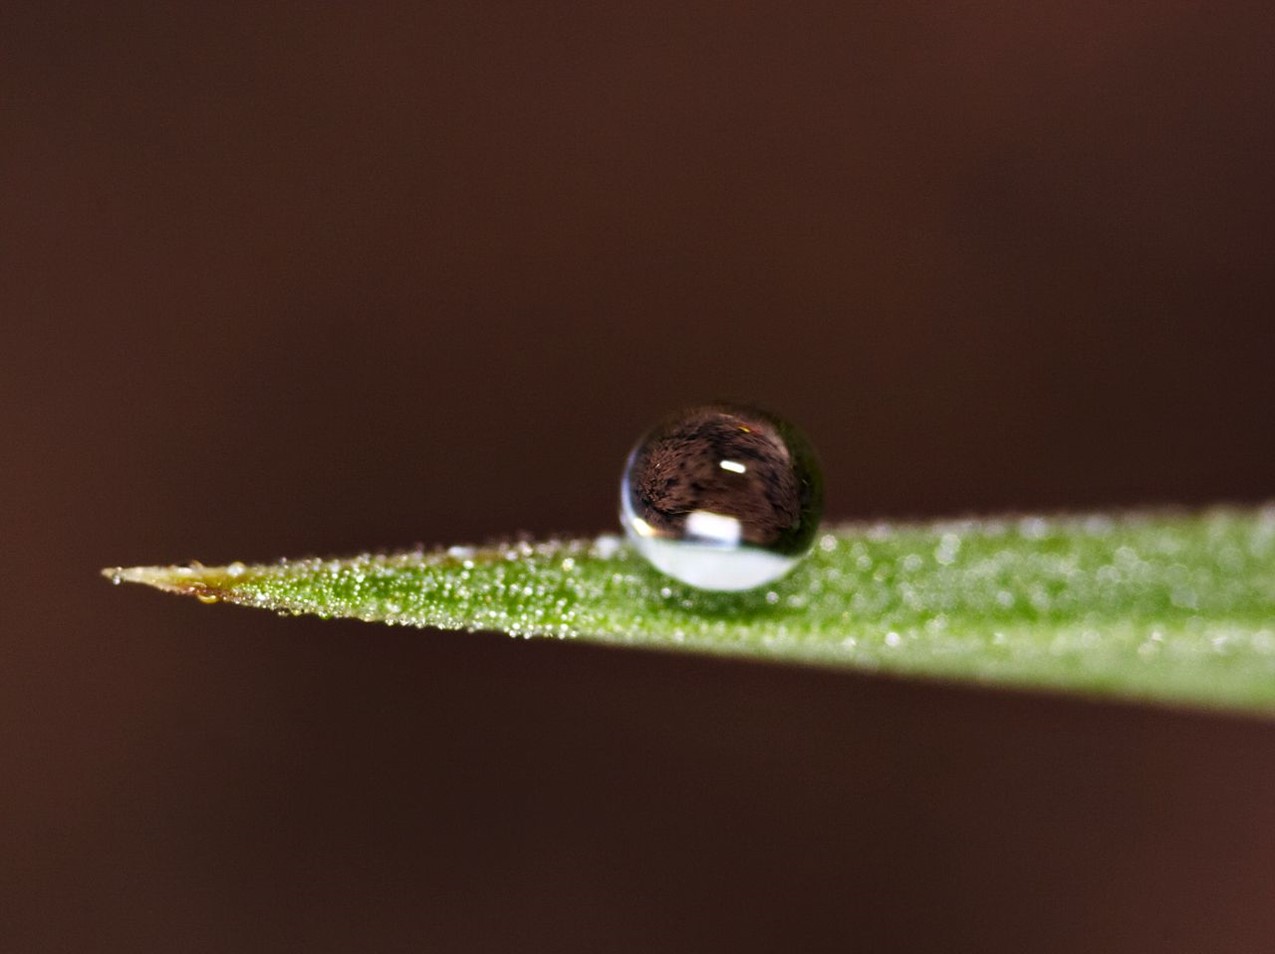 A tiny dew droplet